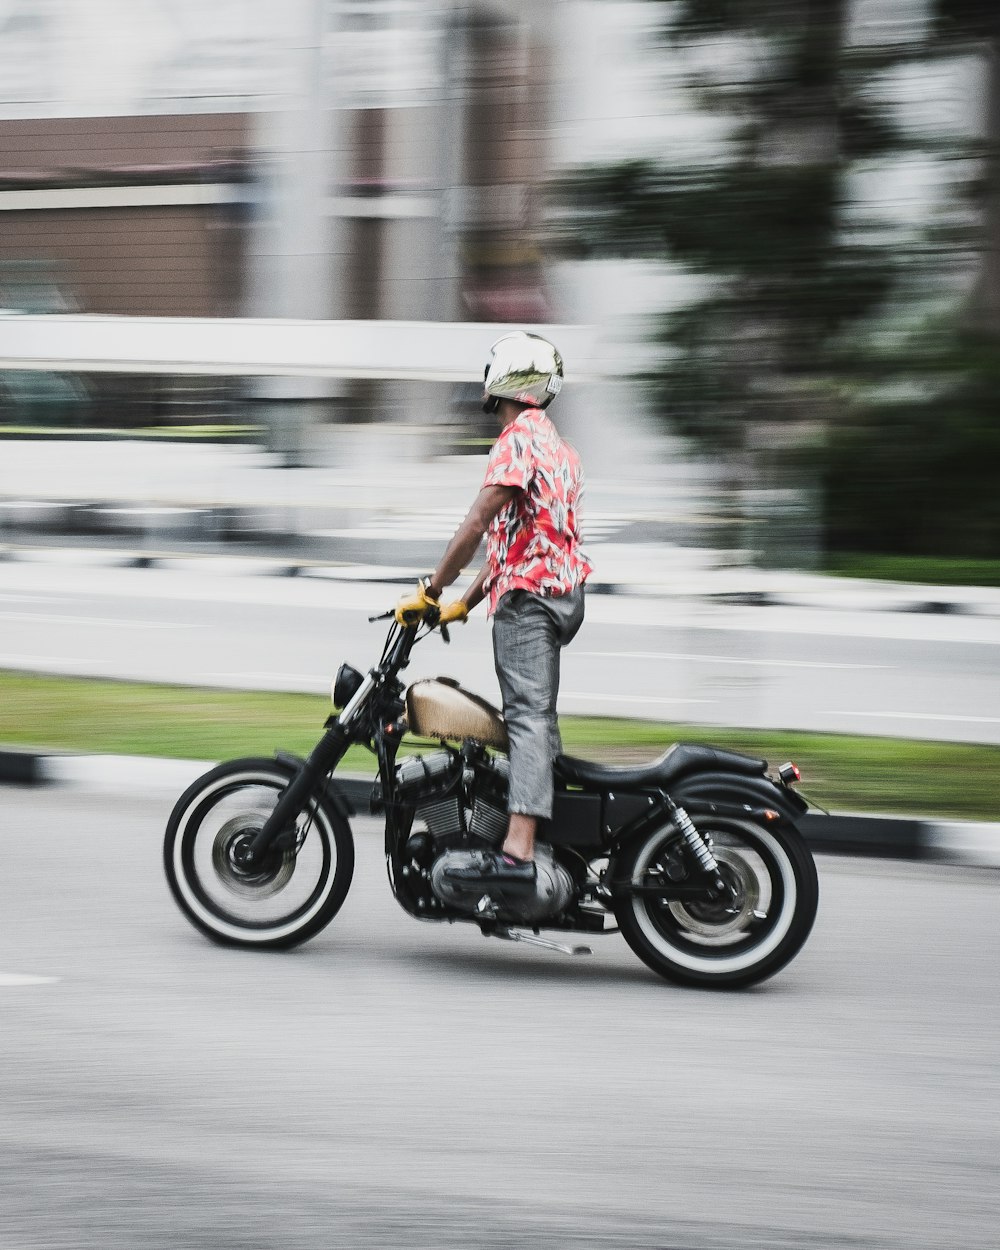 Fotografía de larga exposición de hombre montando motocicleta